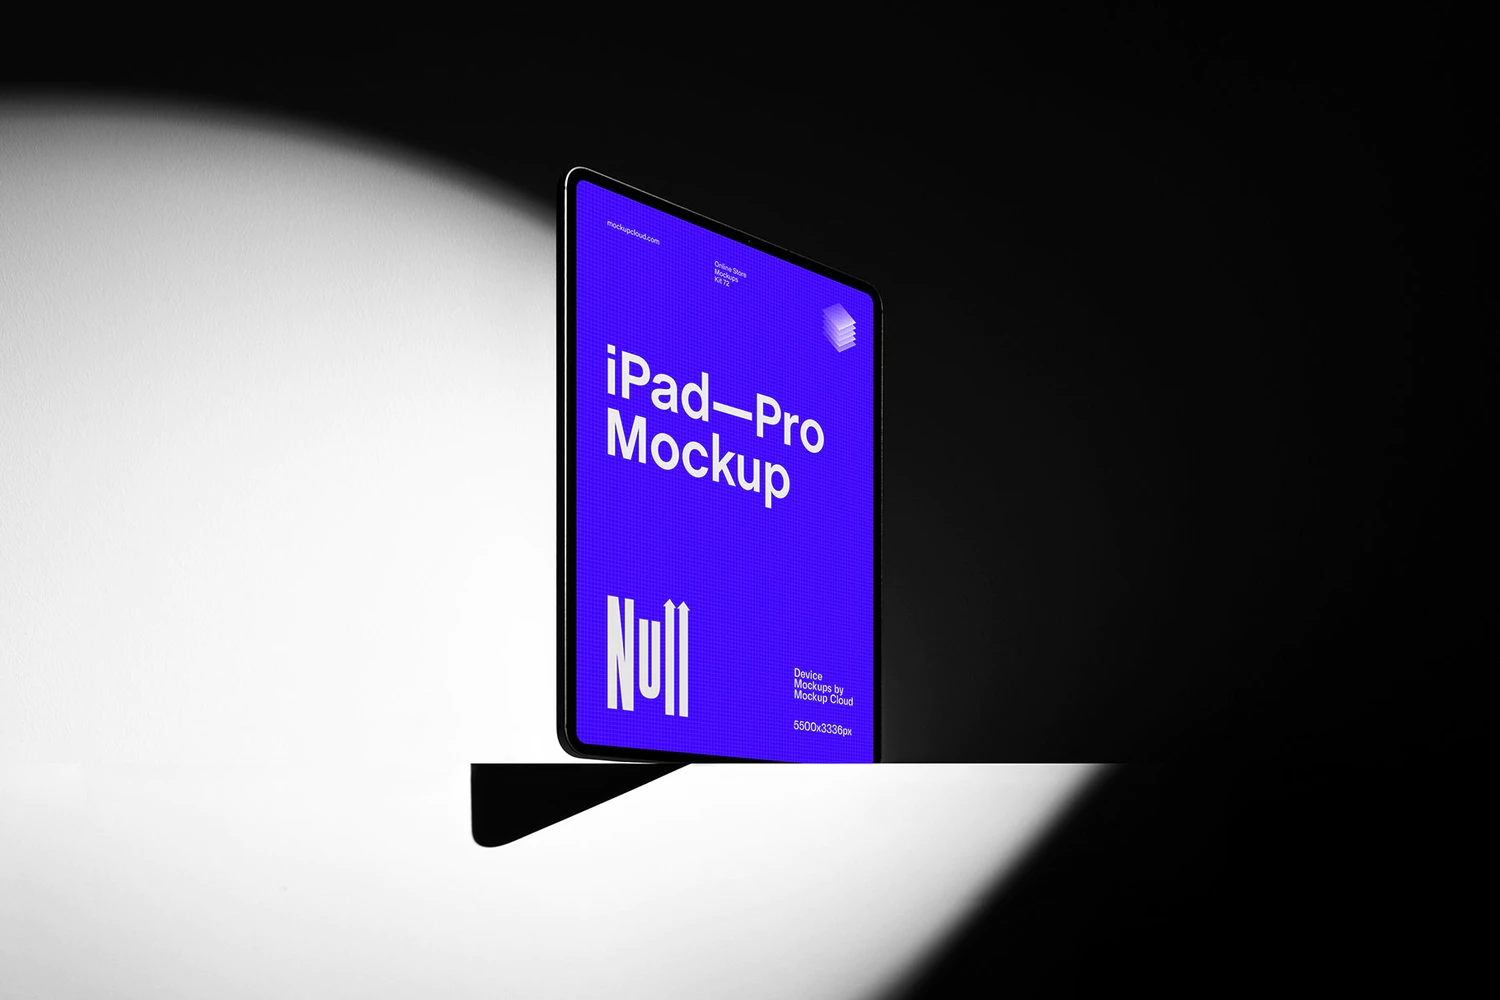 4980 20款极简iPad海报包装手提袋胶带名片记事本VI设计作品贴图ps样机 Null Branding Mockups Kit@GOOODME.COM